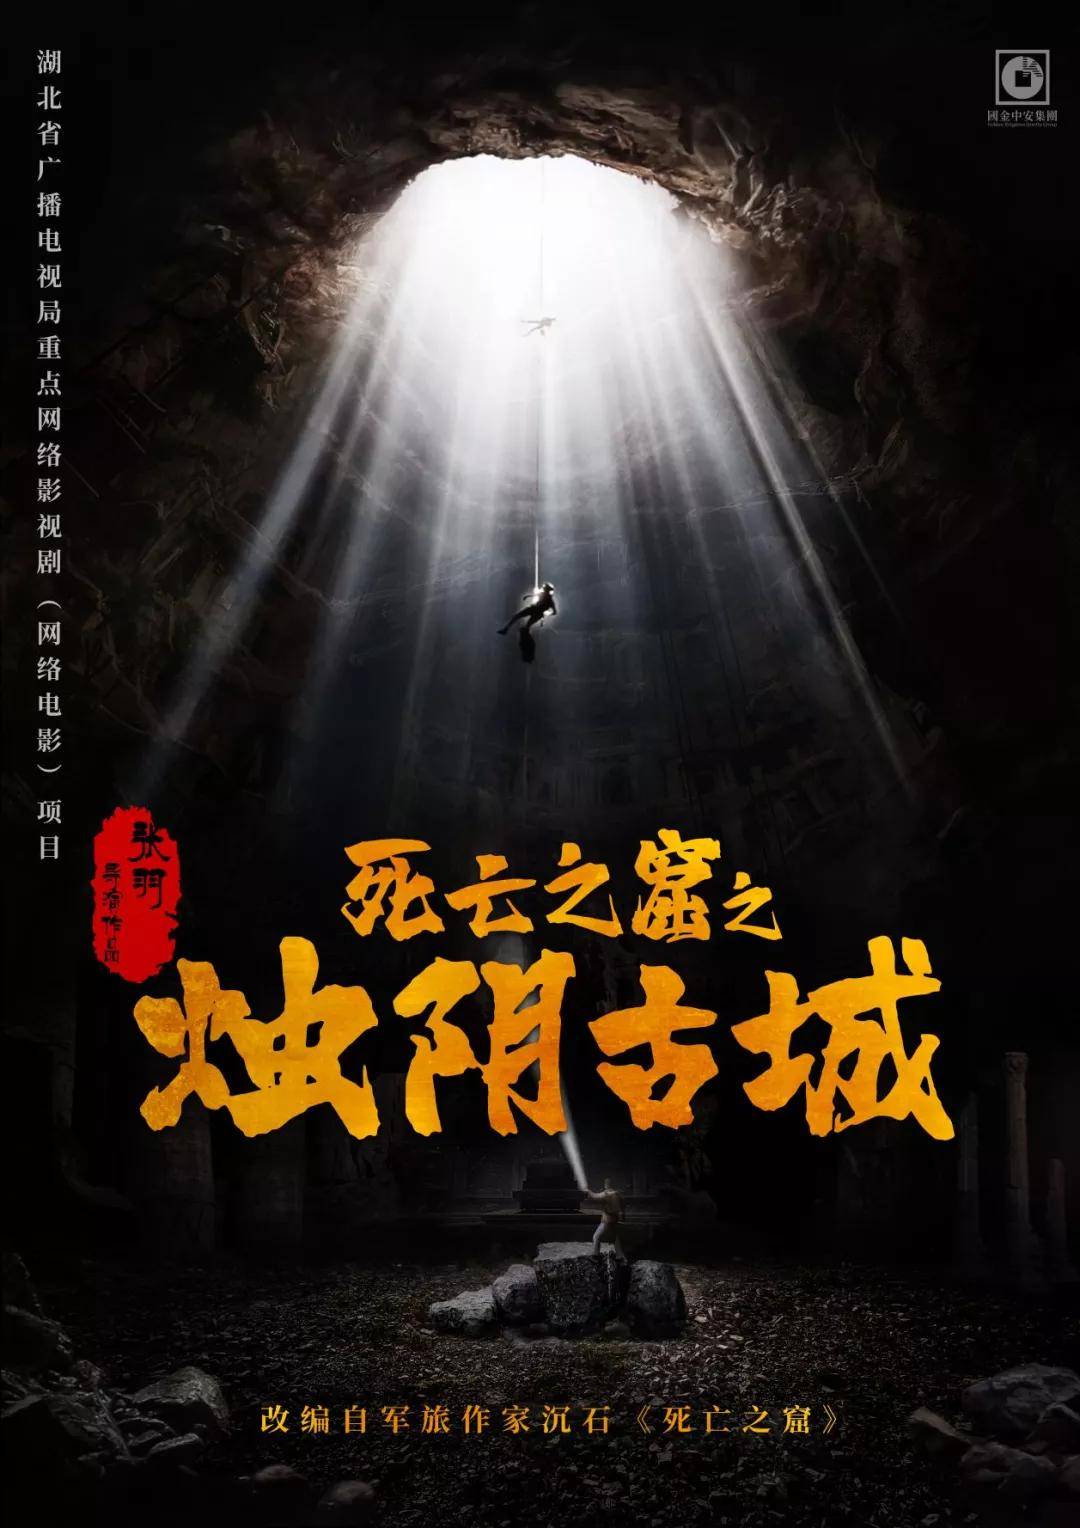 奇幻冒险动作电影《死亡之窟之烛阴古城》在宁夏银川开机